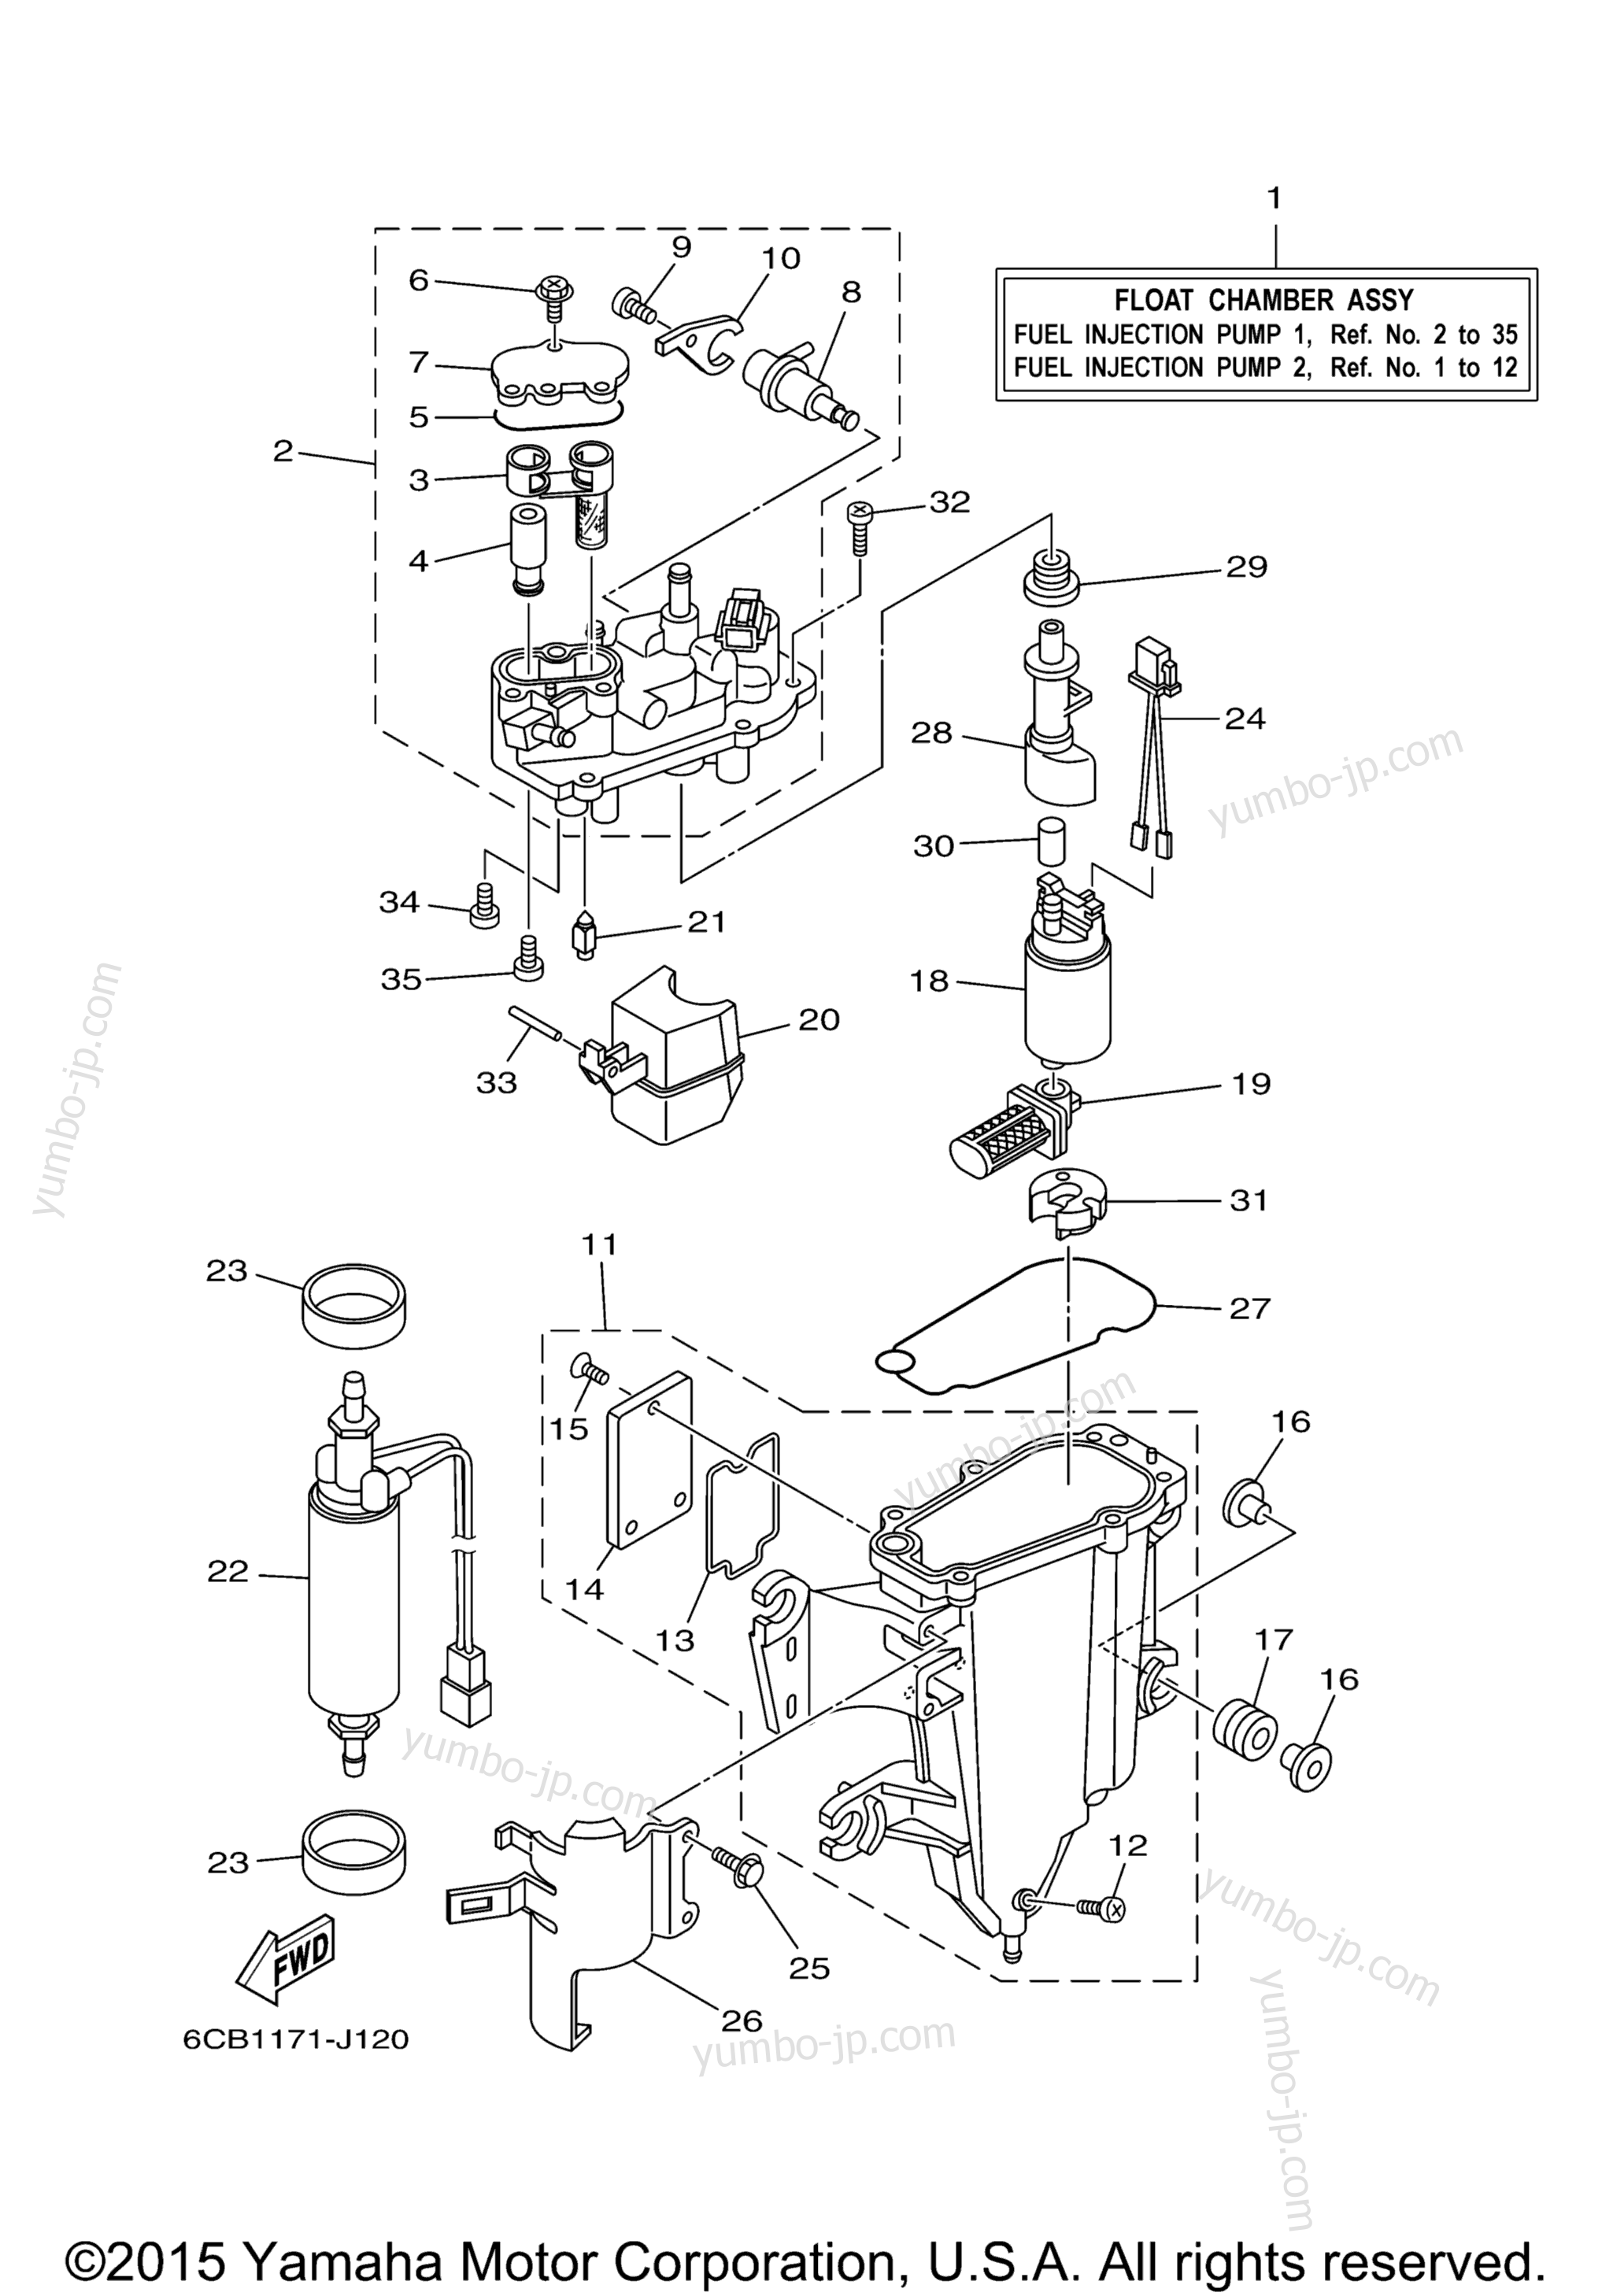 Fuel Injection Pump 1 для лодочных моторов YAMAHA VF225LA (0410) 2006 г.